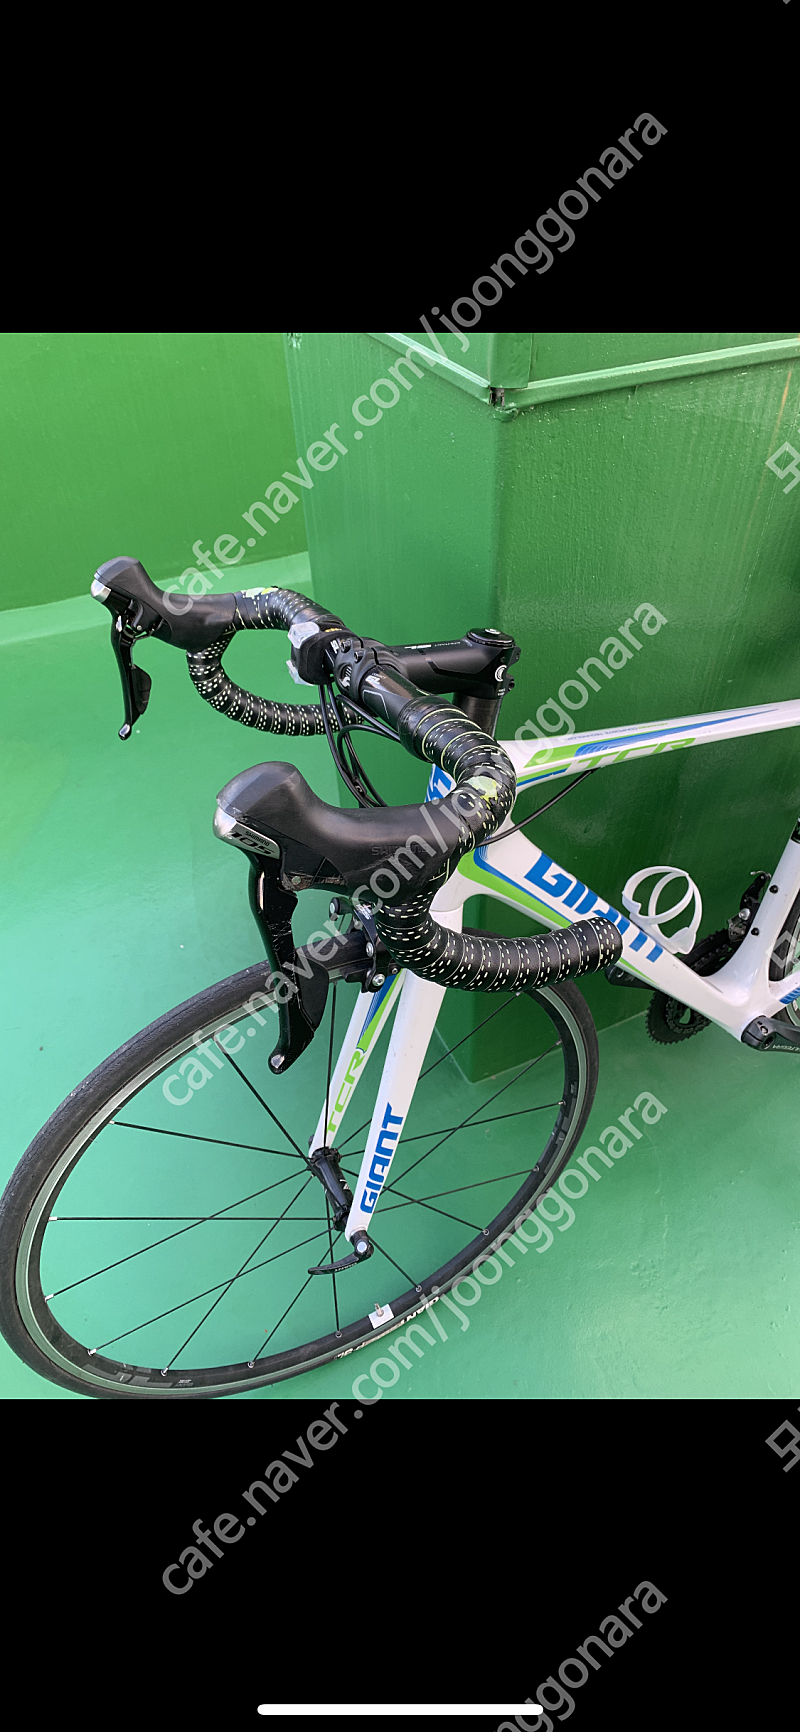 2015 자이언트 tcr프로1 카본 로드자전거